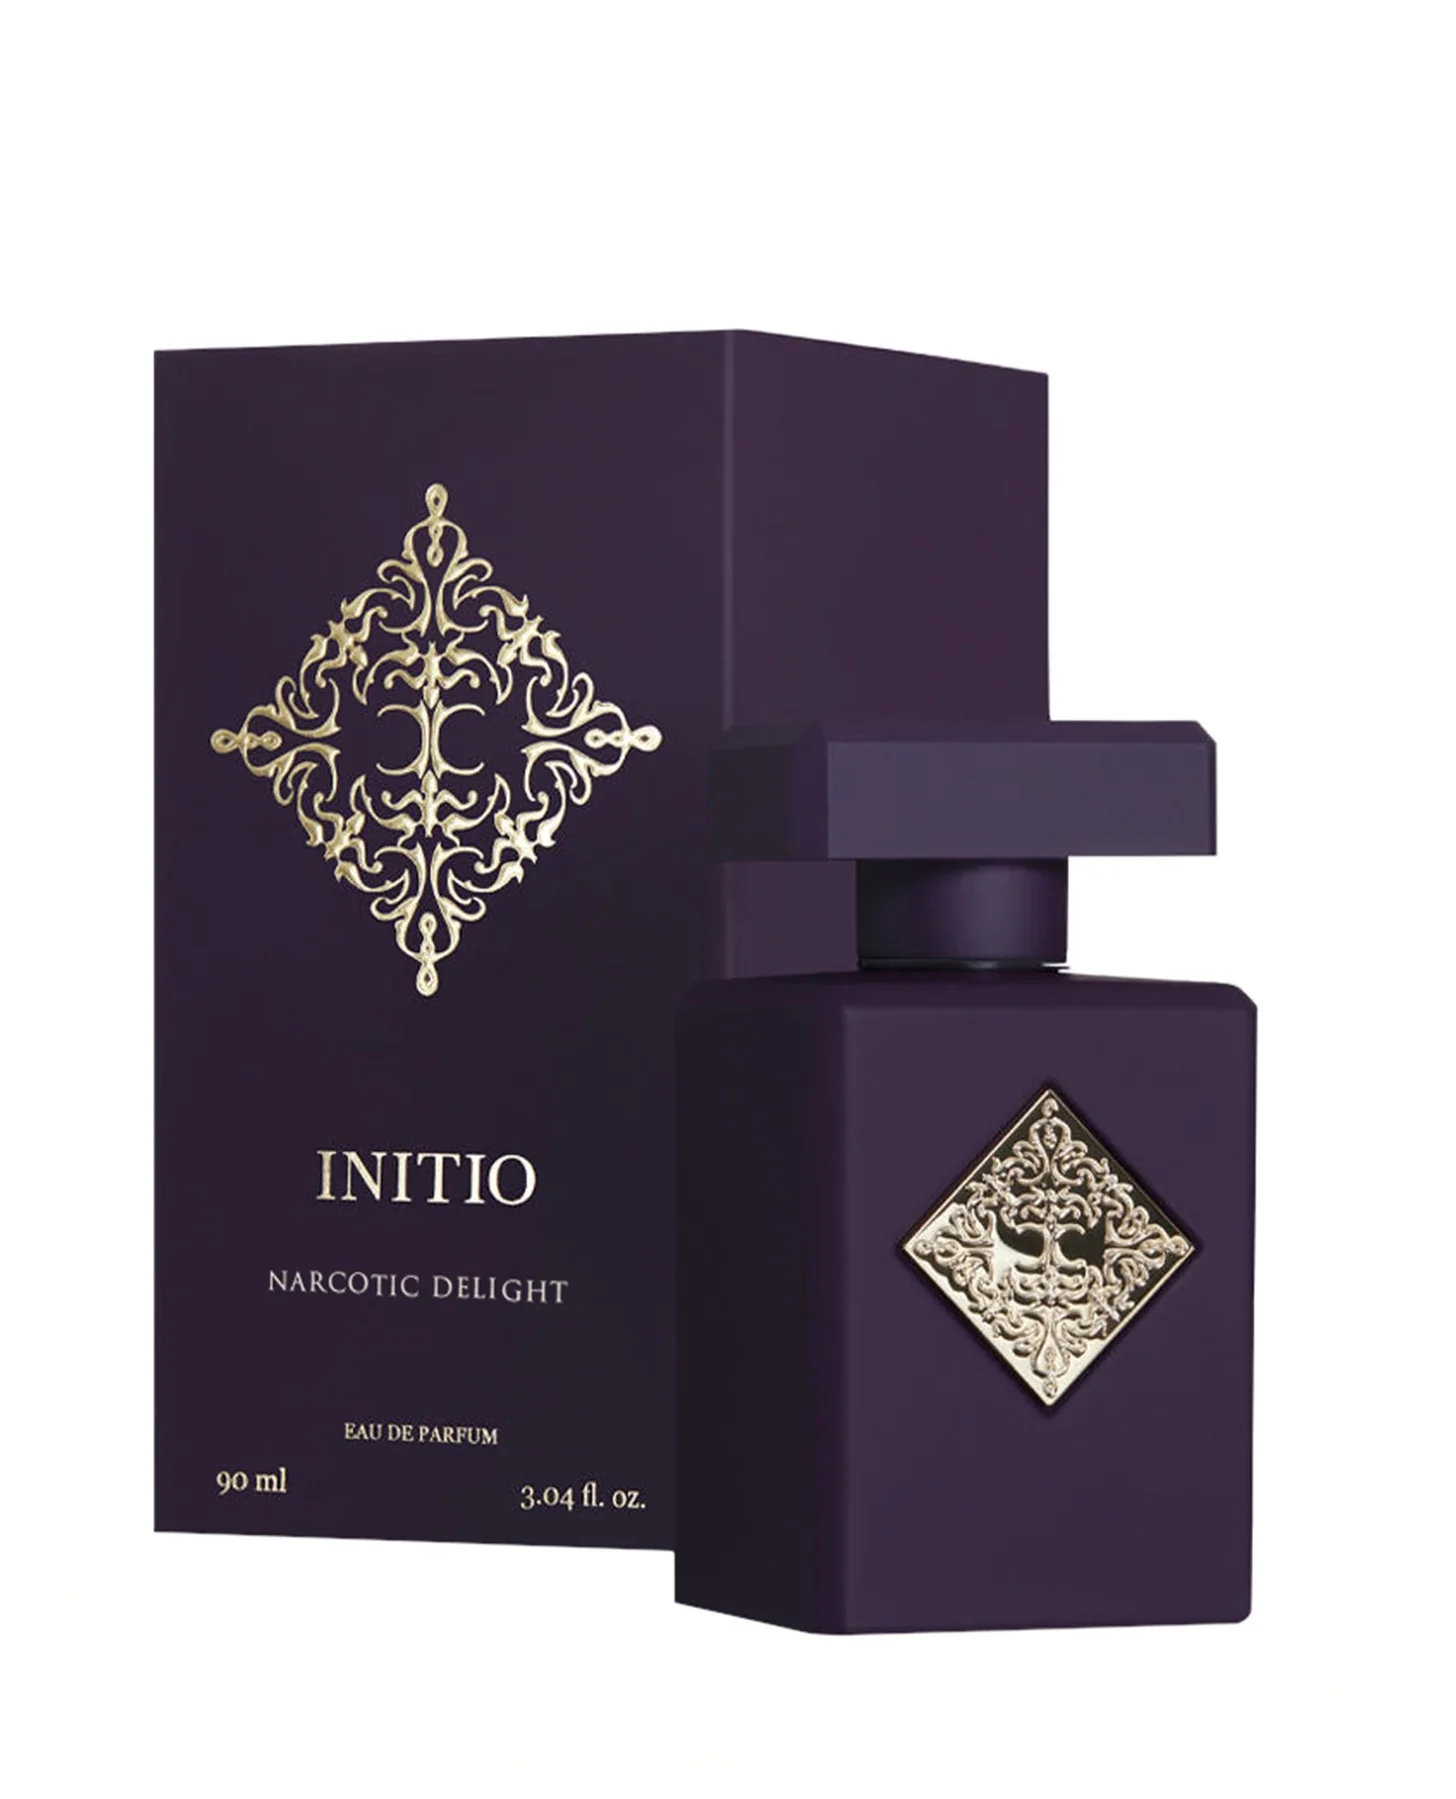 Initio - Narcotic Delight - Eau de Parfum